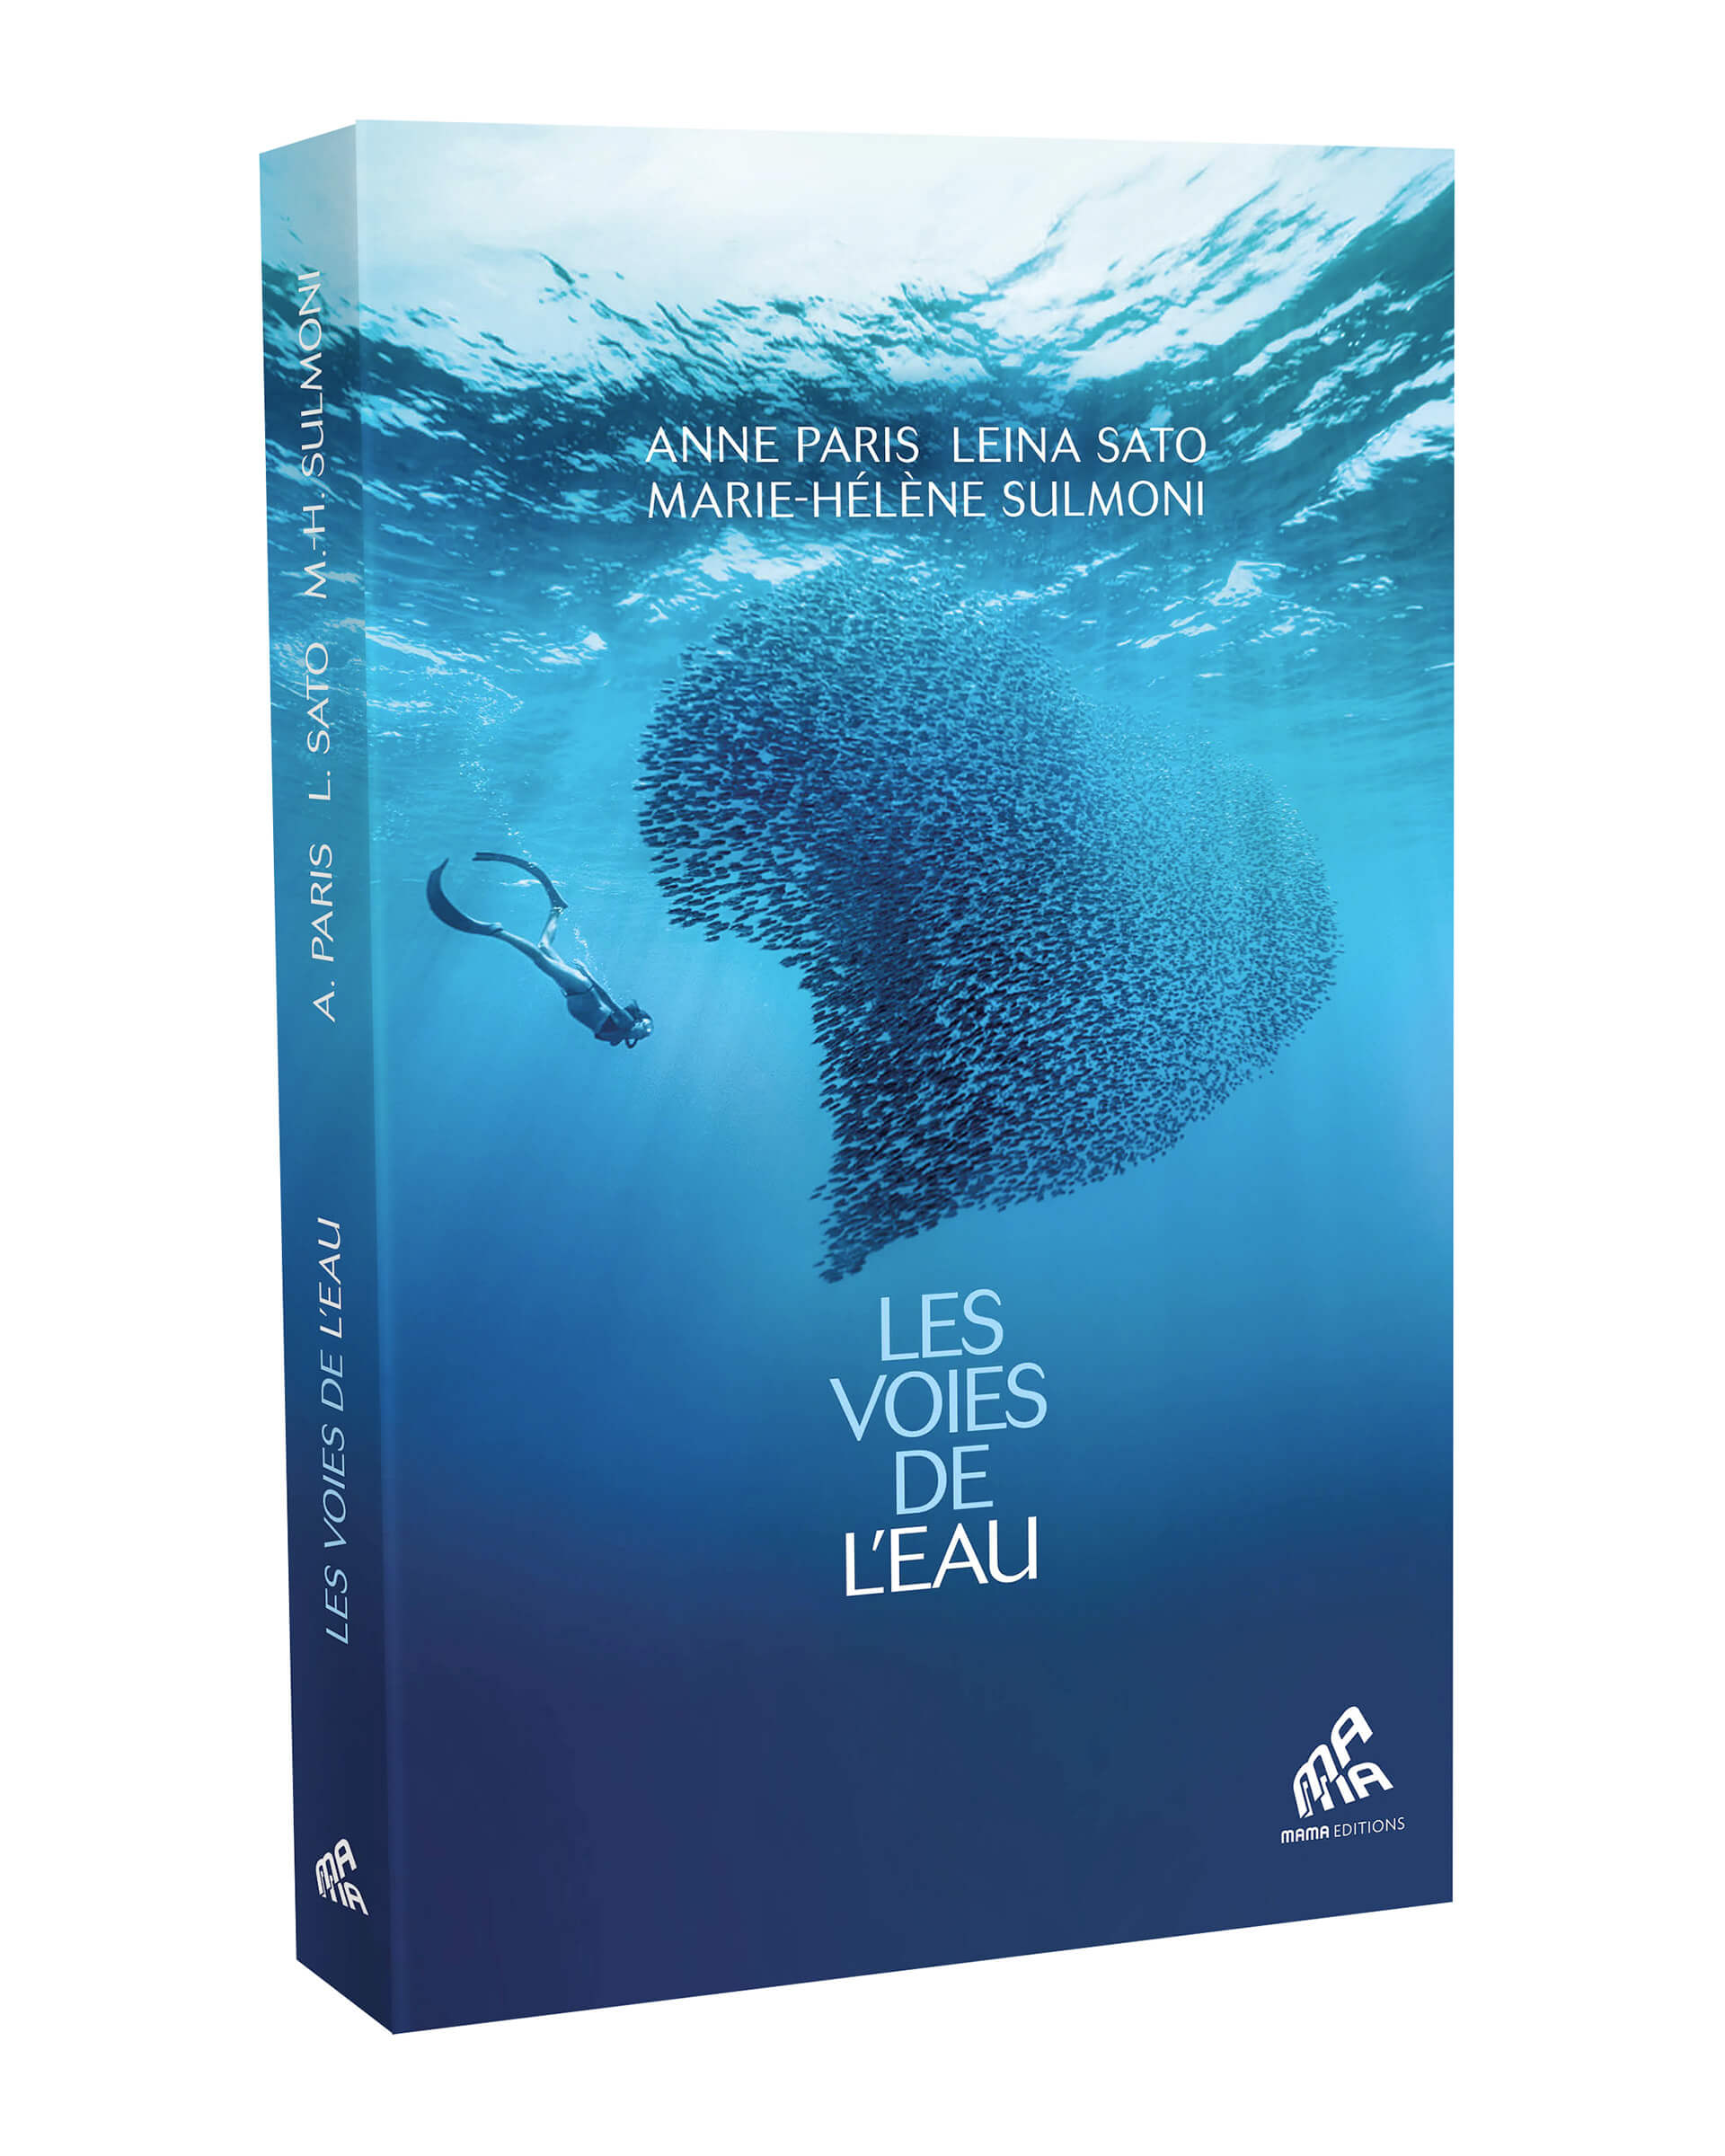 Lire la suite à propos de l’article « Les voies de l’eau » par Anne Paris, Marie-Hélène Sulmoni & Leina Sato